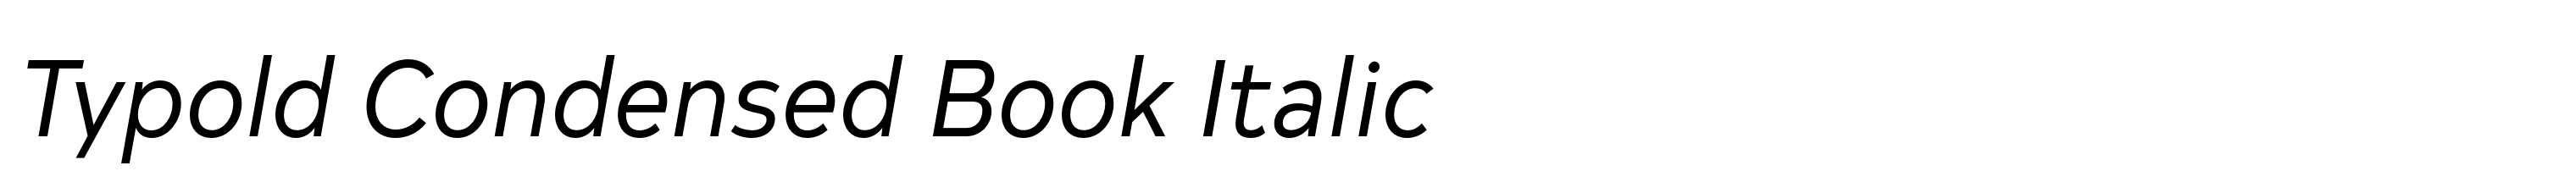 Typold Condensed Book Italic